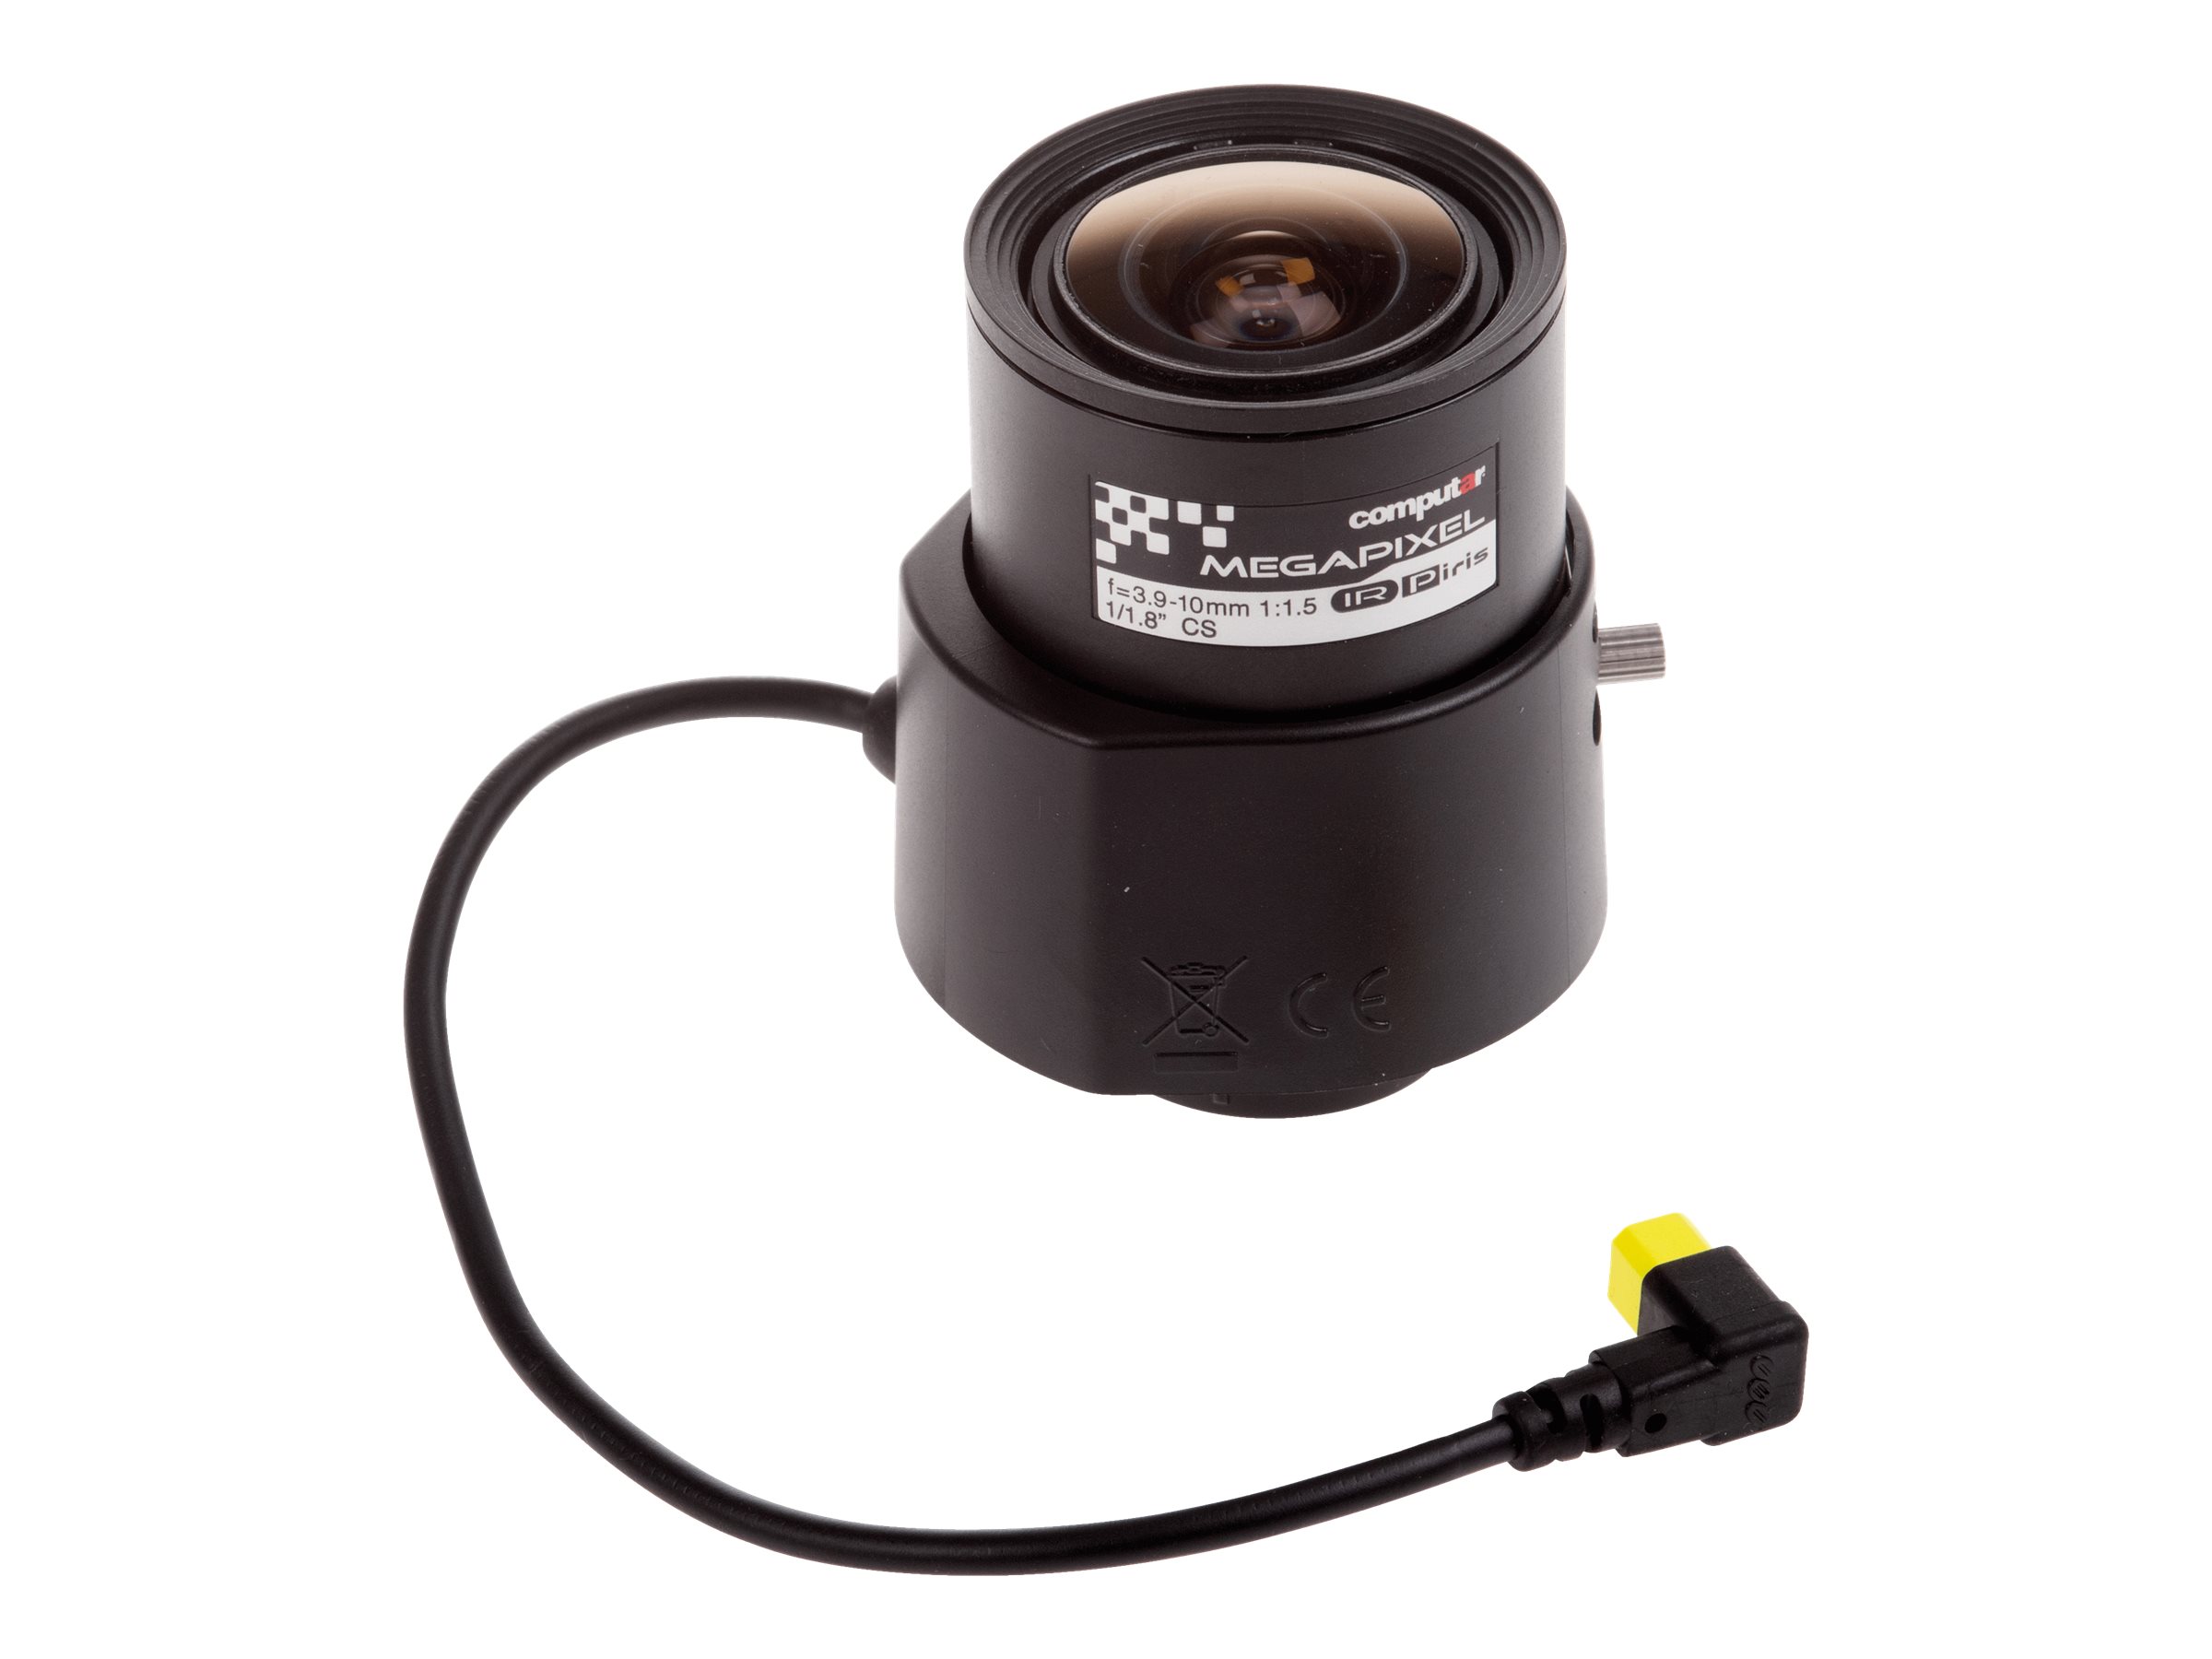 Axis Computar Megapixel - CCTV-Objektiv - verschiedene Brennweiten - Automatische Irisblende - 14.1 mm (1/1.8")